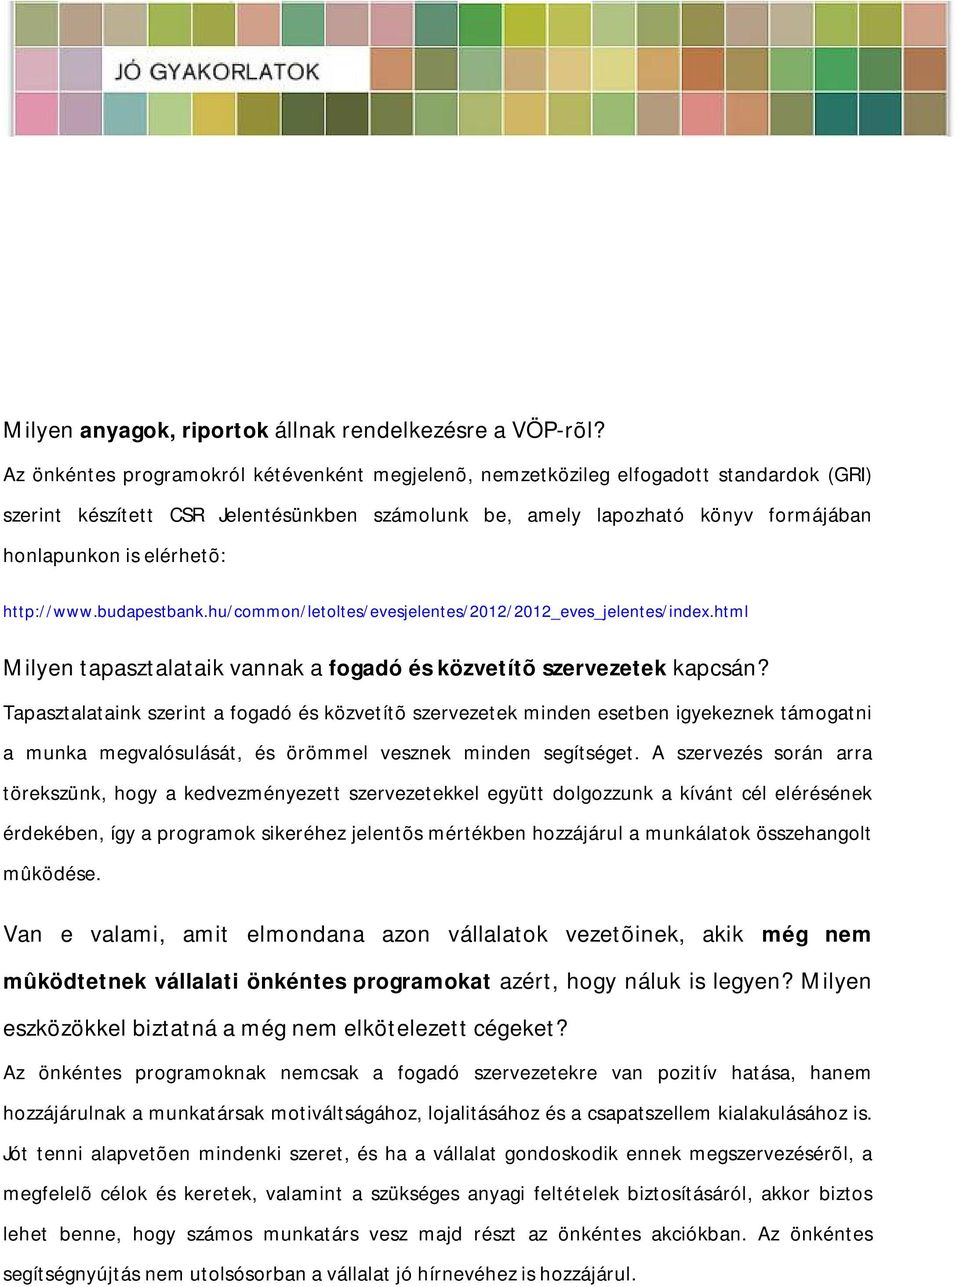 http://www.budapestbank.hu/common/letoltes/evesjelentes/2012/2012_eves_jelentes/index.html Milyen tapasztalataik vannak a fogadó és közvetítõ szervezetek kapcsán?